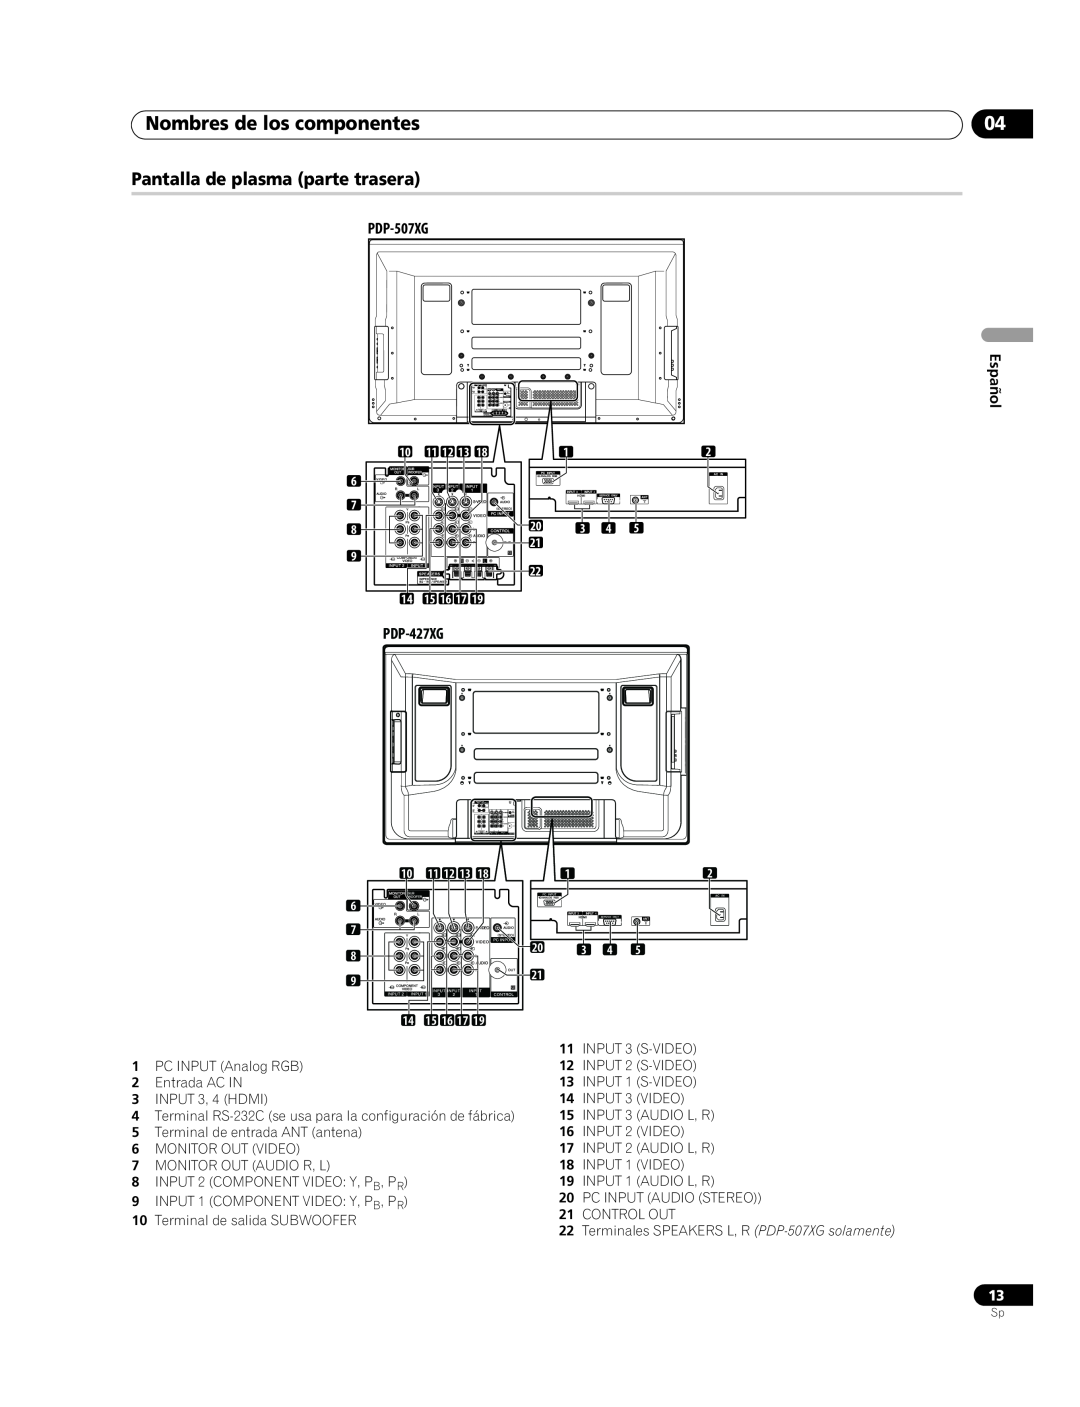 Pioneer PDP-507XG manual Nombres de los componentes, Pantalla de plasma parte trasera, PDP-427XG 